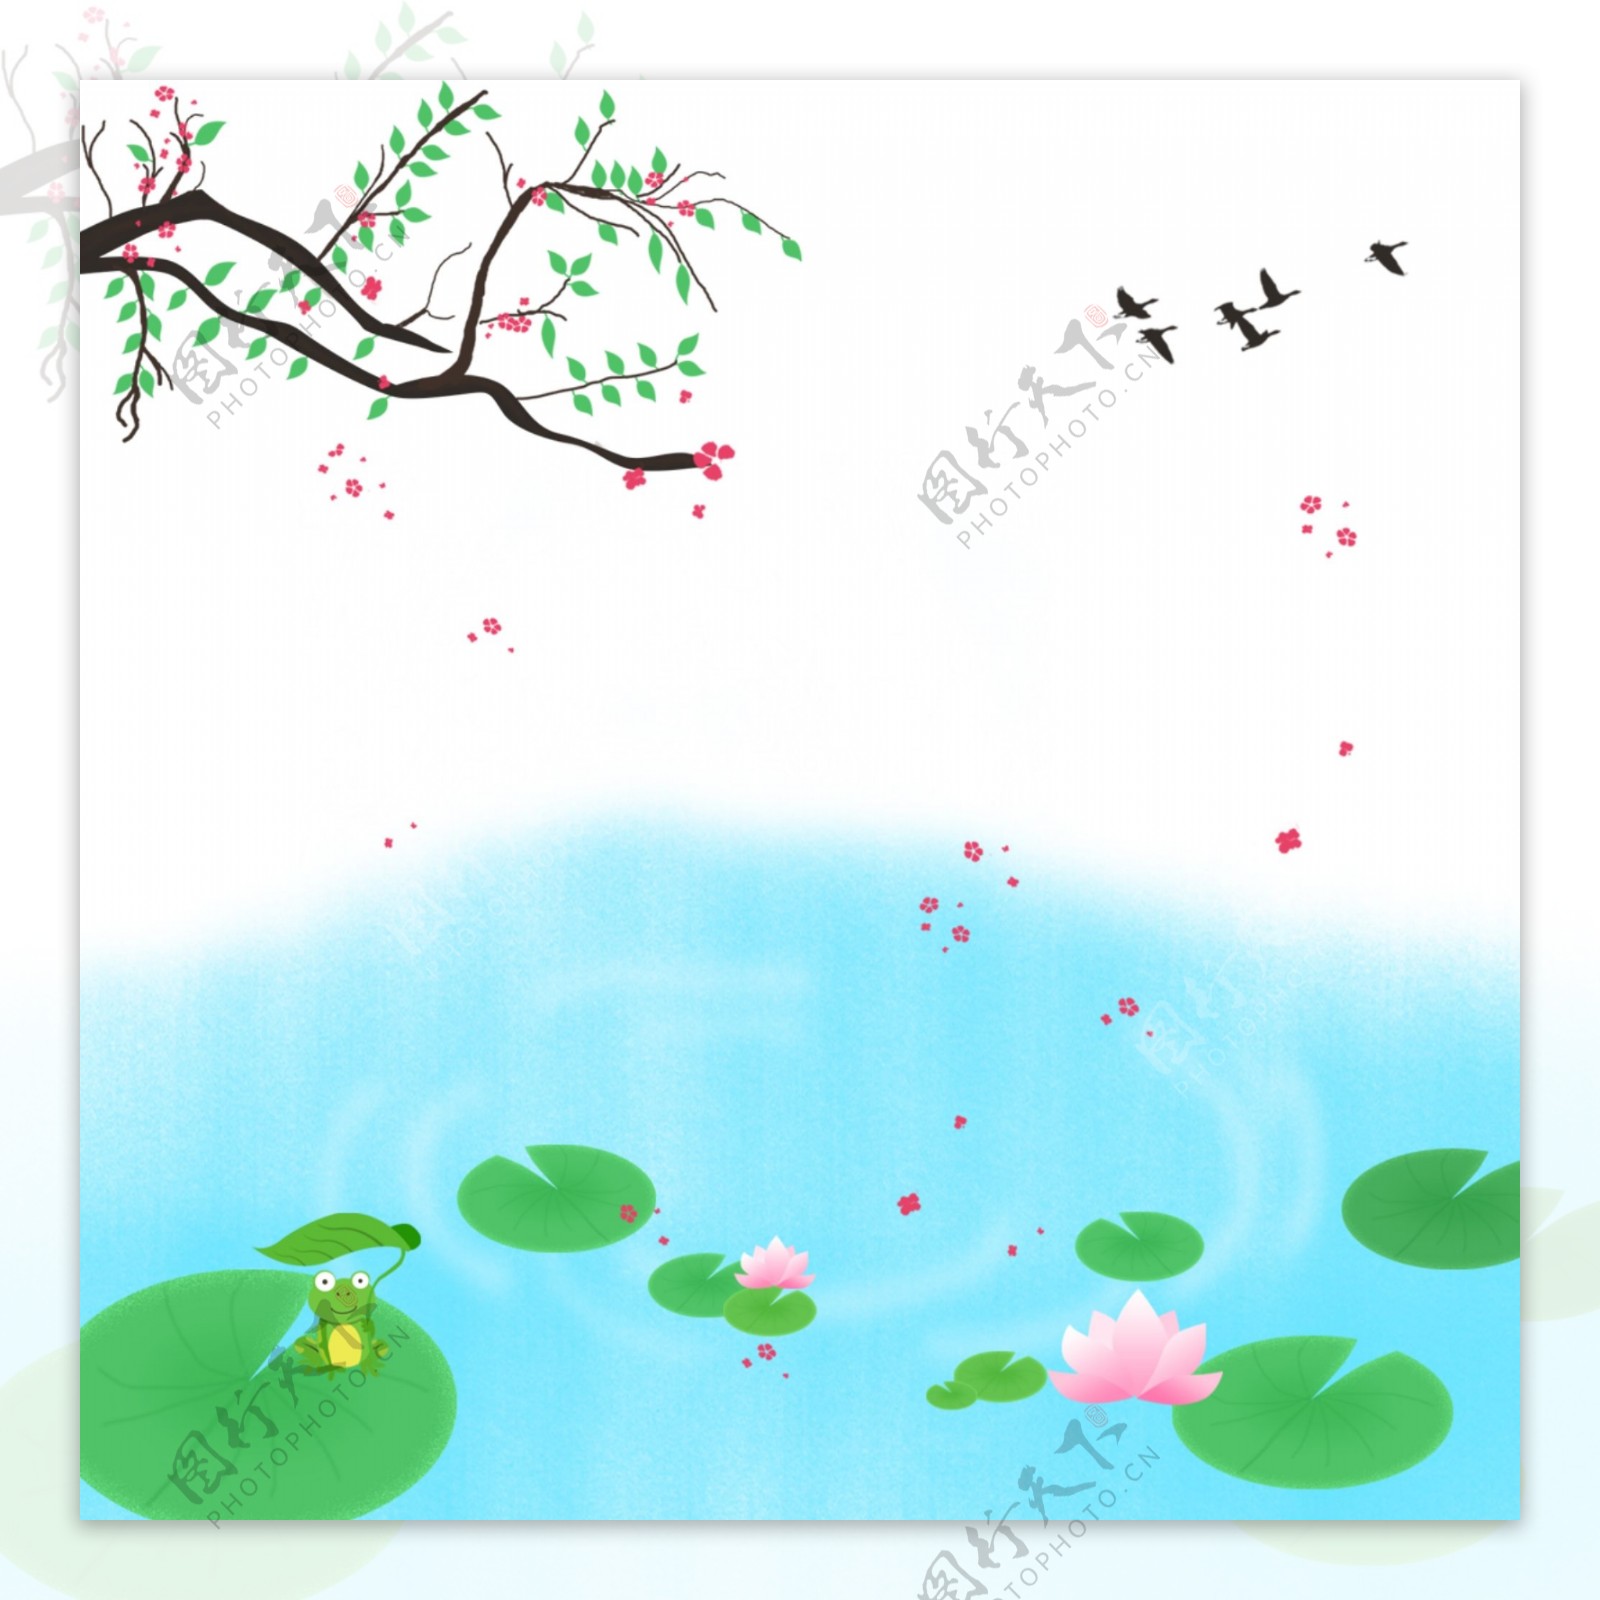 夏季河水里盛开的荷花燕子掠过天空背景